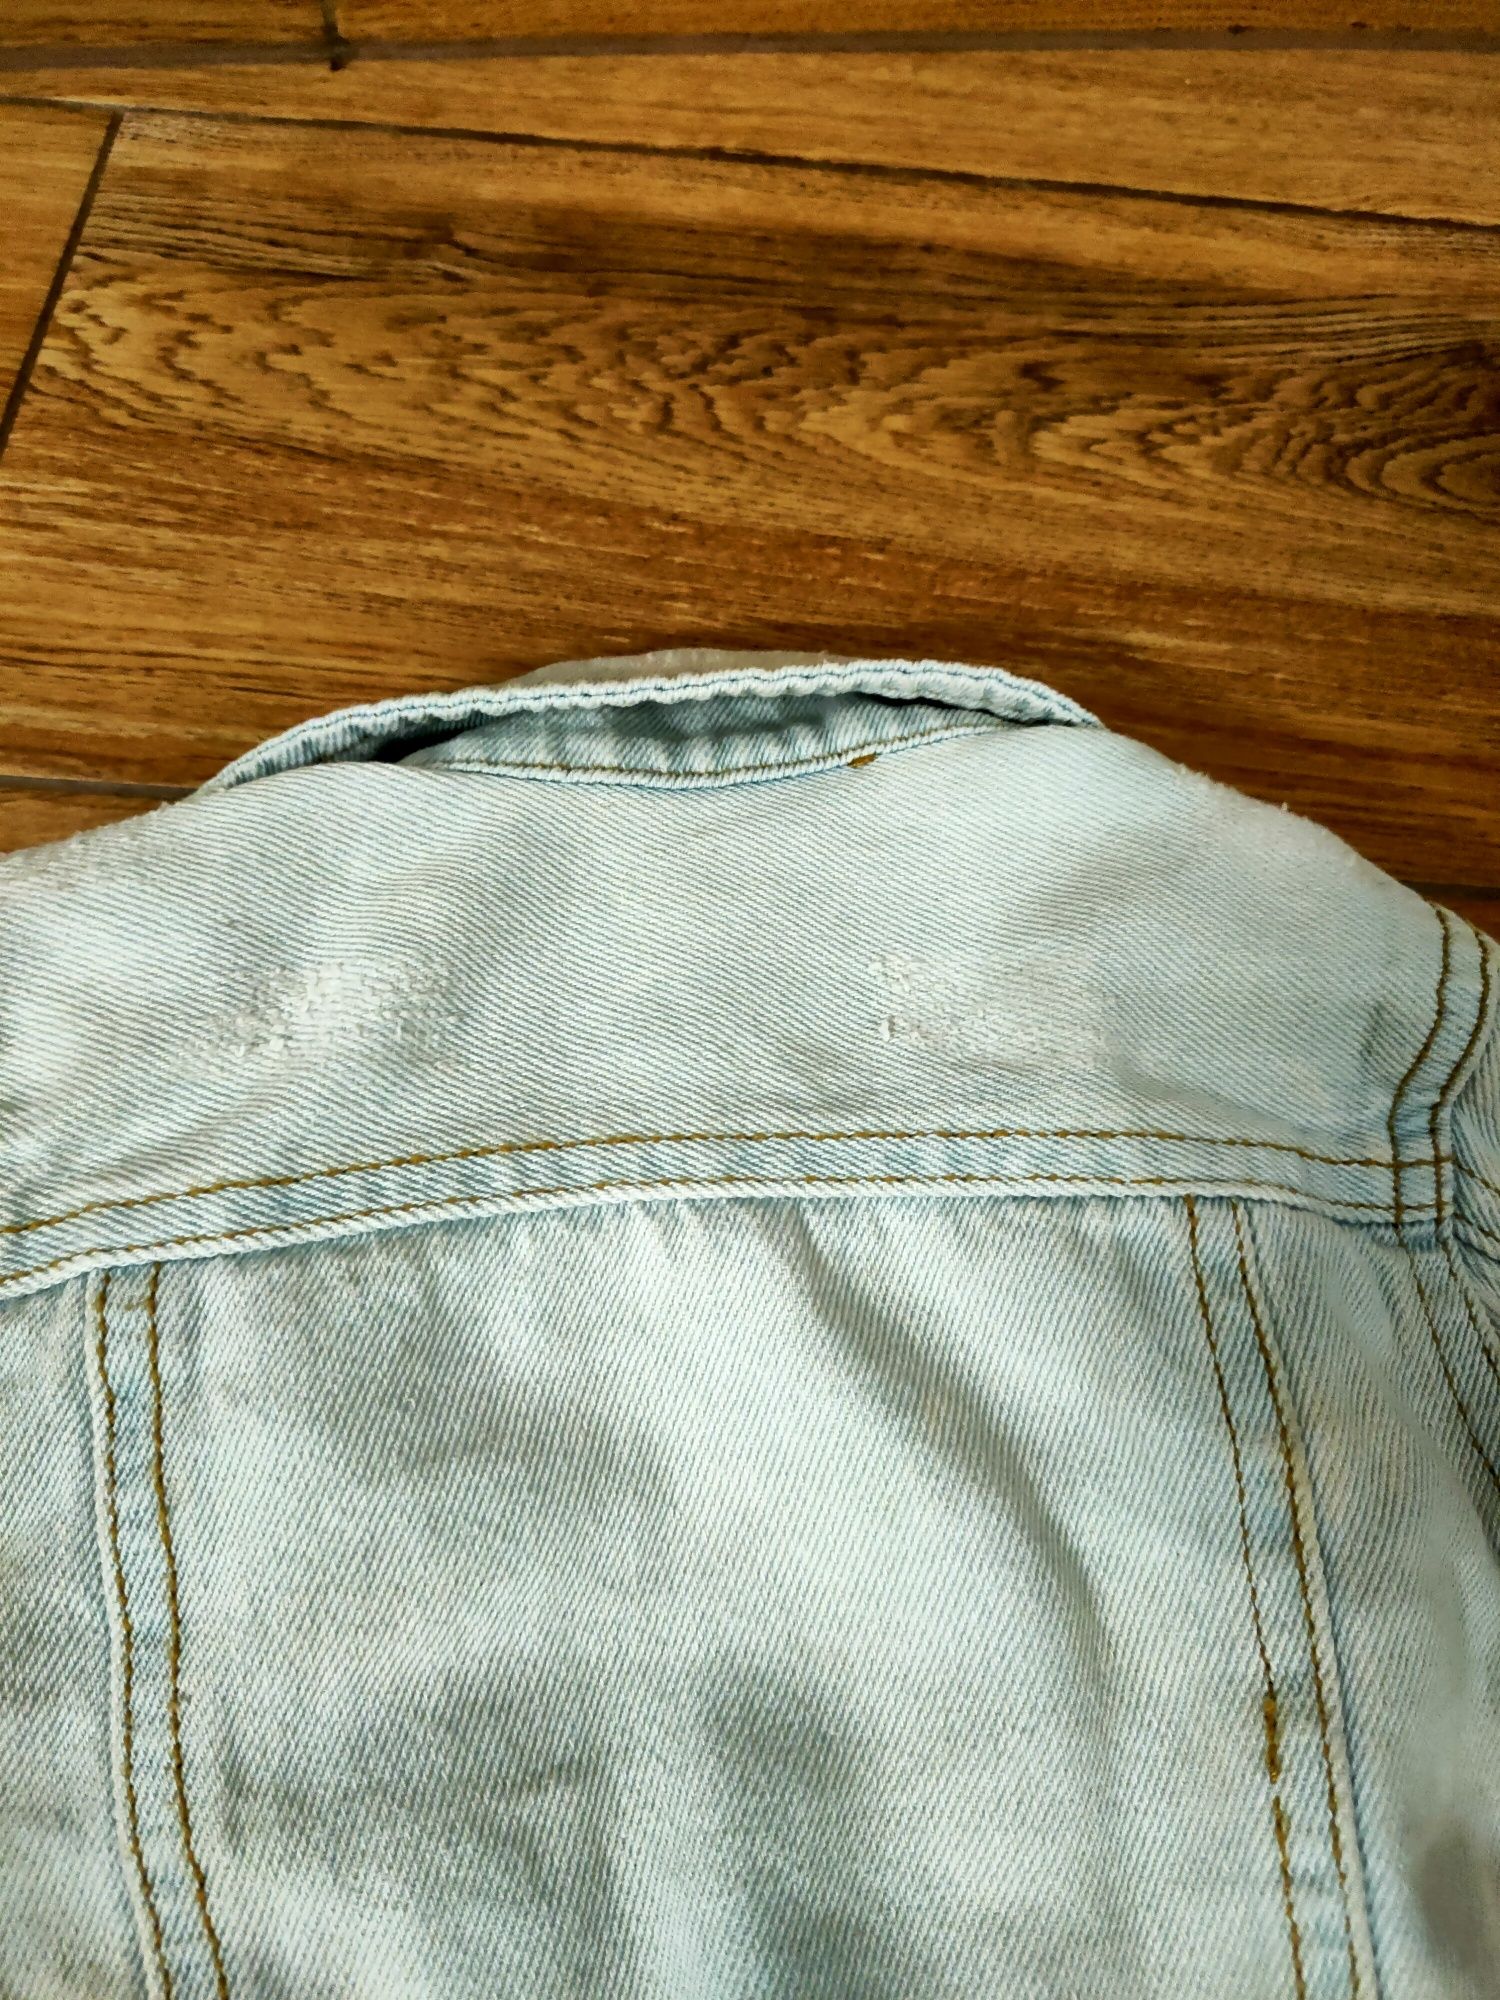 Kurtka jeansowa chłopięca r. 92 polecam